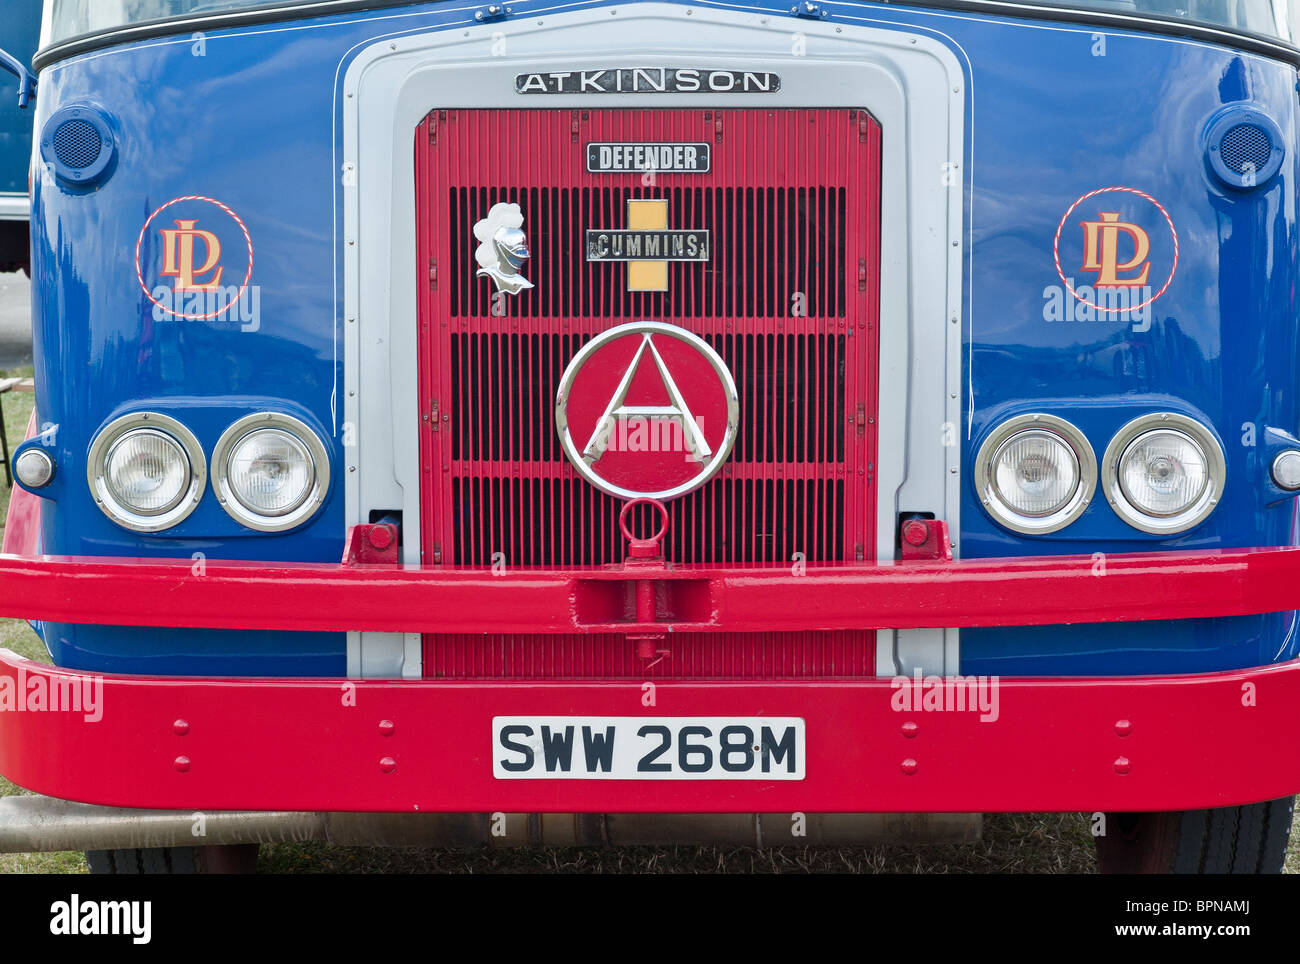 Parte anteriore degli anni settanta Atkinson Defender autocarro in mostra nel Regno Unito 2010 Foto Stock